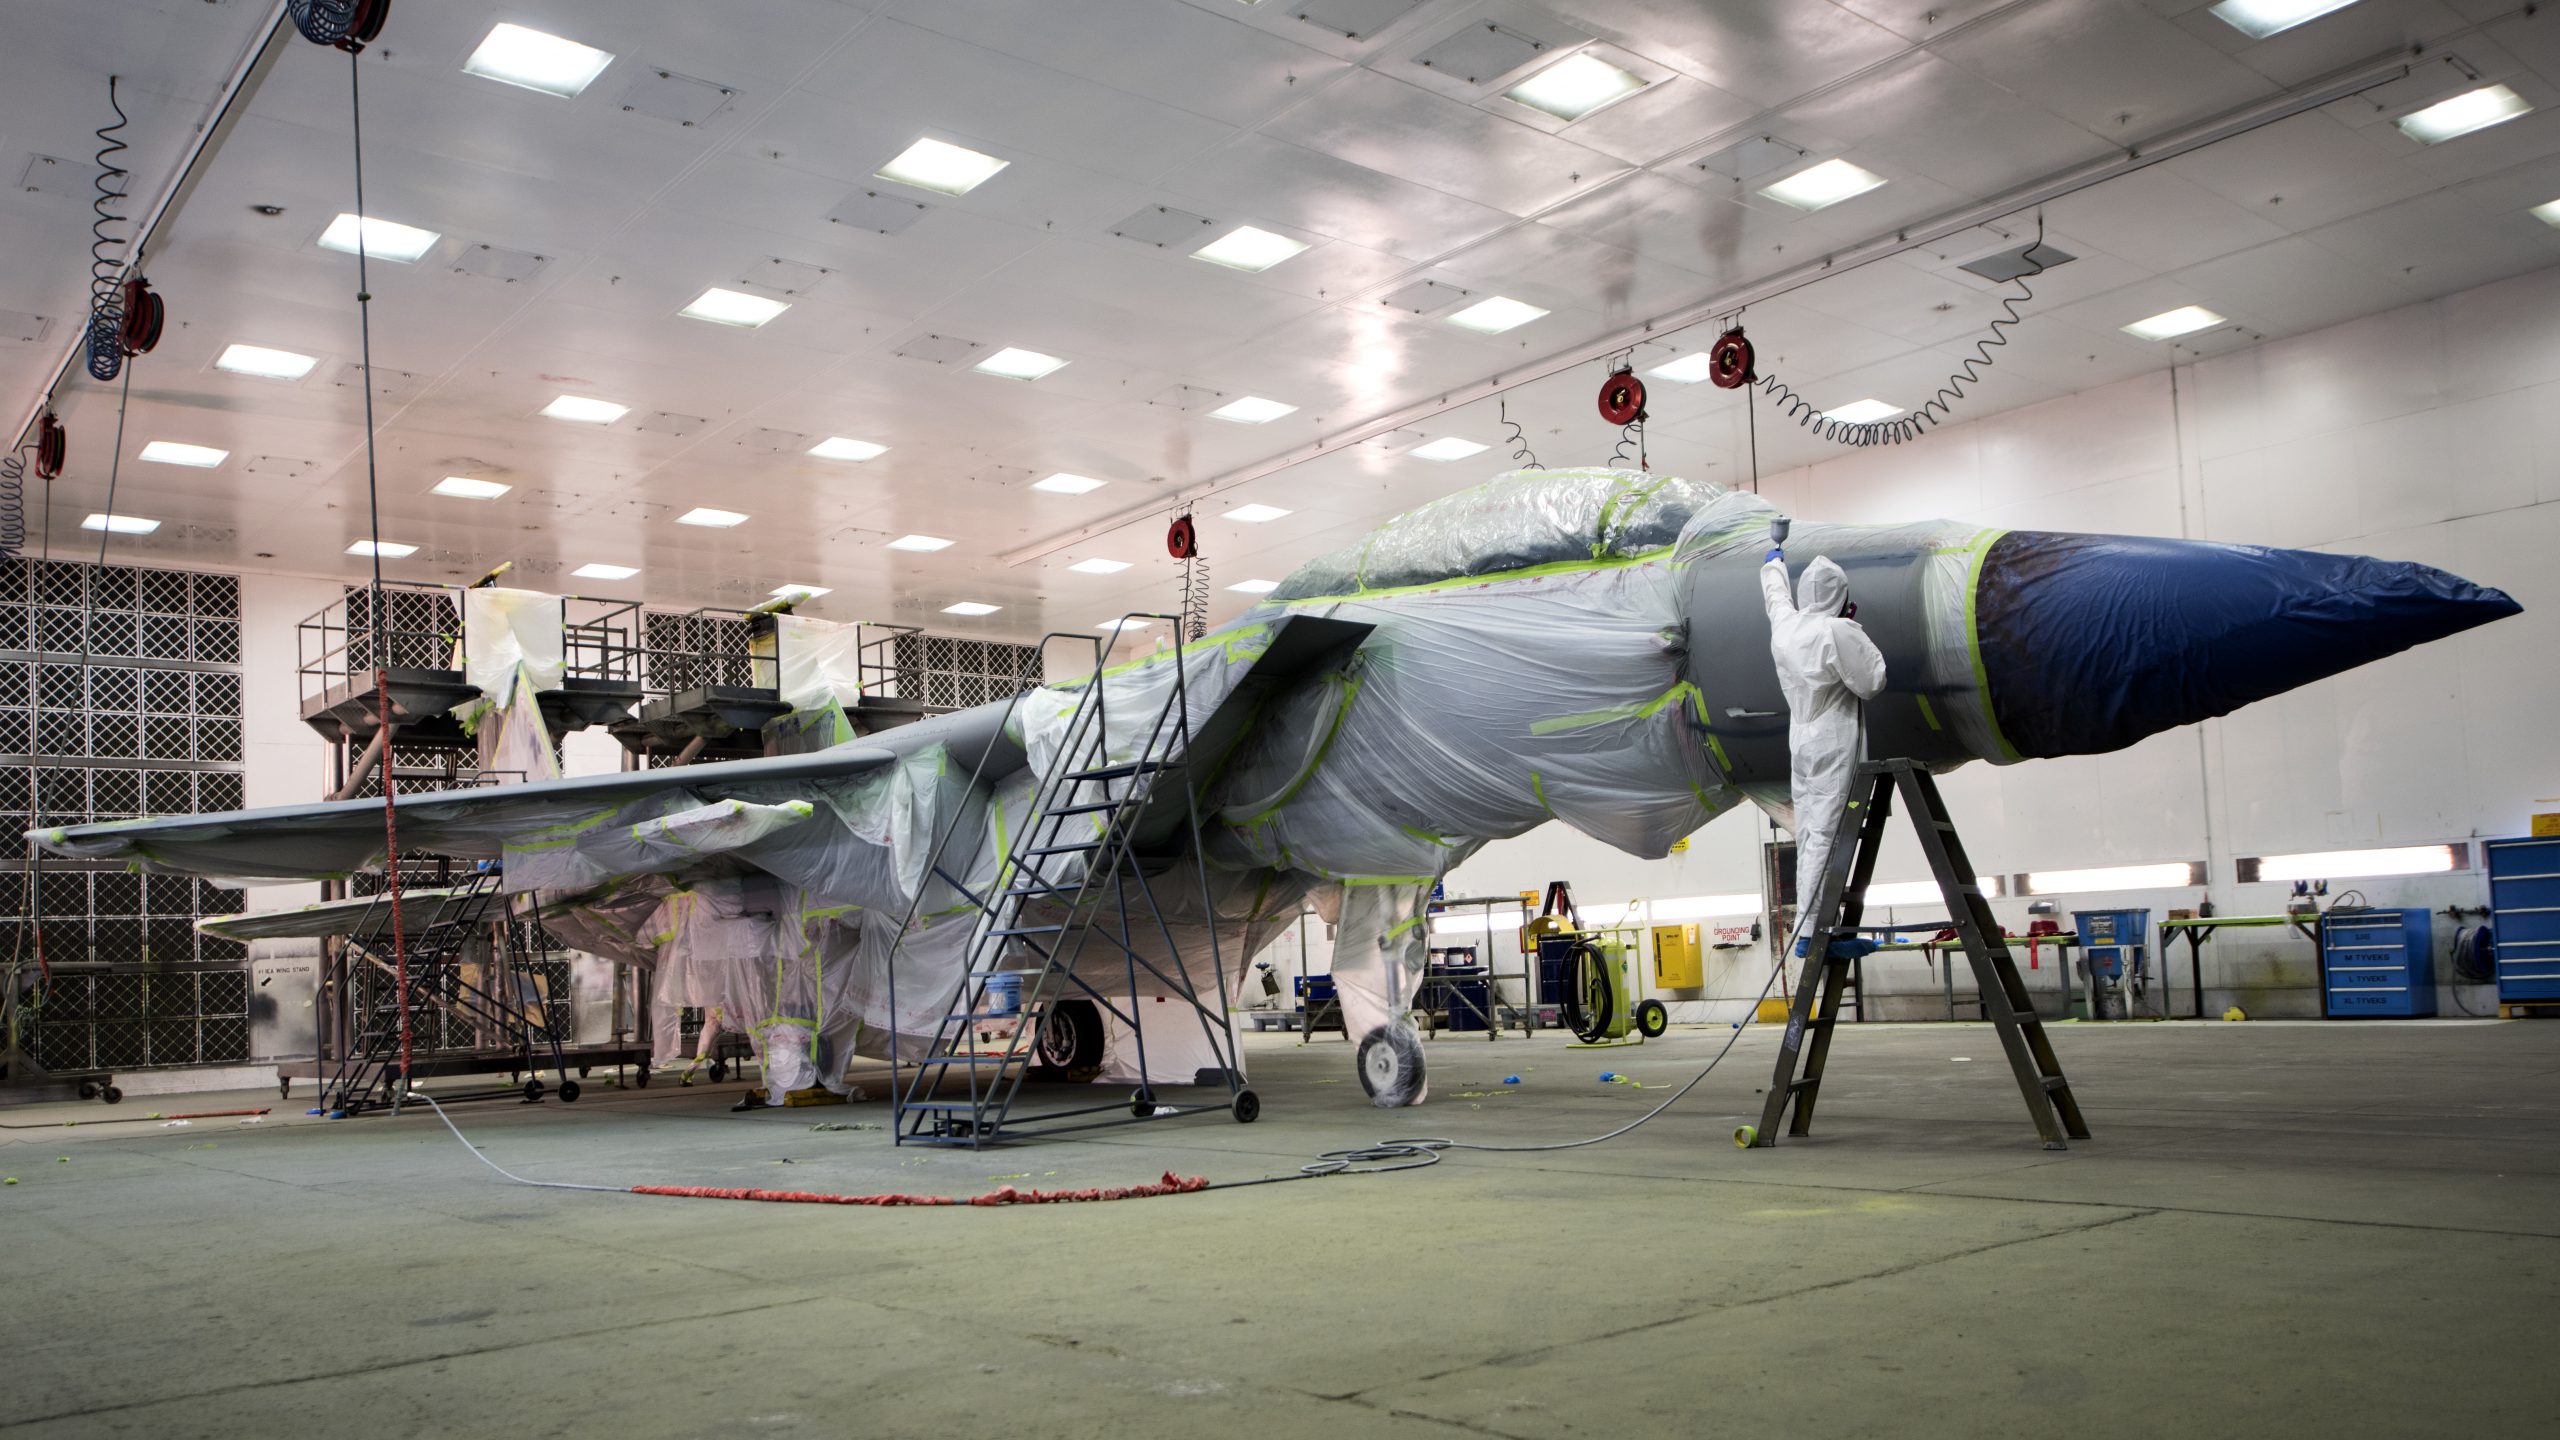 Aircraft in hangar undergoing maintenance